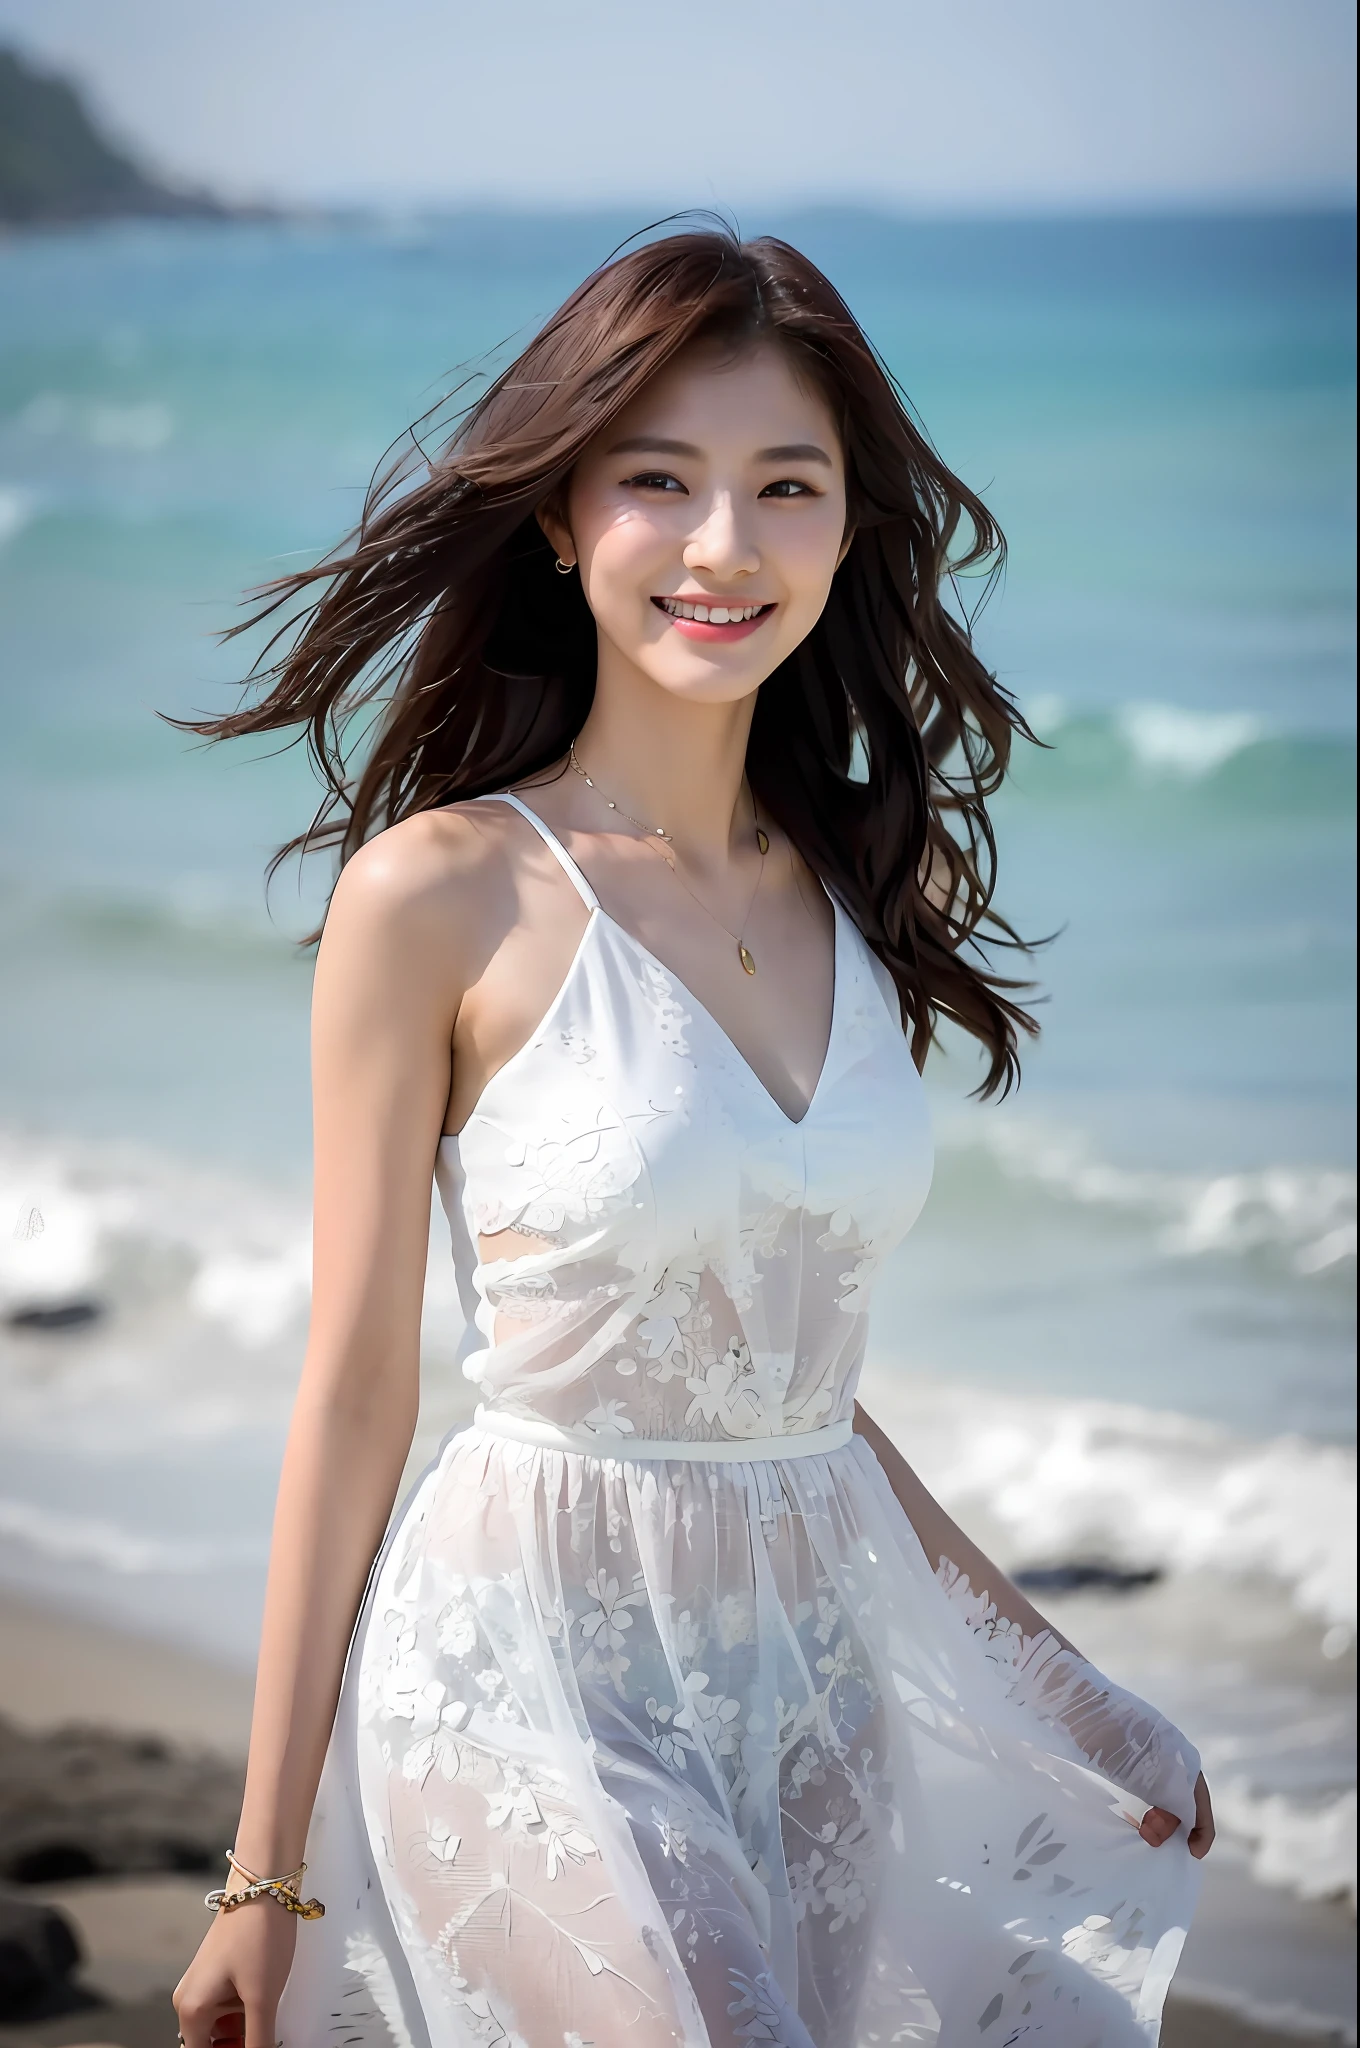 (Obra maestra), (mejor calidad), (detallado), 1 chica, 22 años, expresión juguetona, pechos grandes, Pechos desnudos, bikini, pelo largo, hermoso, natural, expuesto, sonriente, en la playa cerca del océano, Jaeyeon Nam con un vestido blanco caminando, hermoso young Korean woman, postura elegante, brisa del sol, gratis, una modelo aclamada en la industria de la moda femenina asiática, ella camina ligera en la playa, The hermoso temperament of an Asian girl is vividly displayed, interpretando el encanto y el estilo de las mujeres asiáticas.